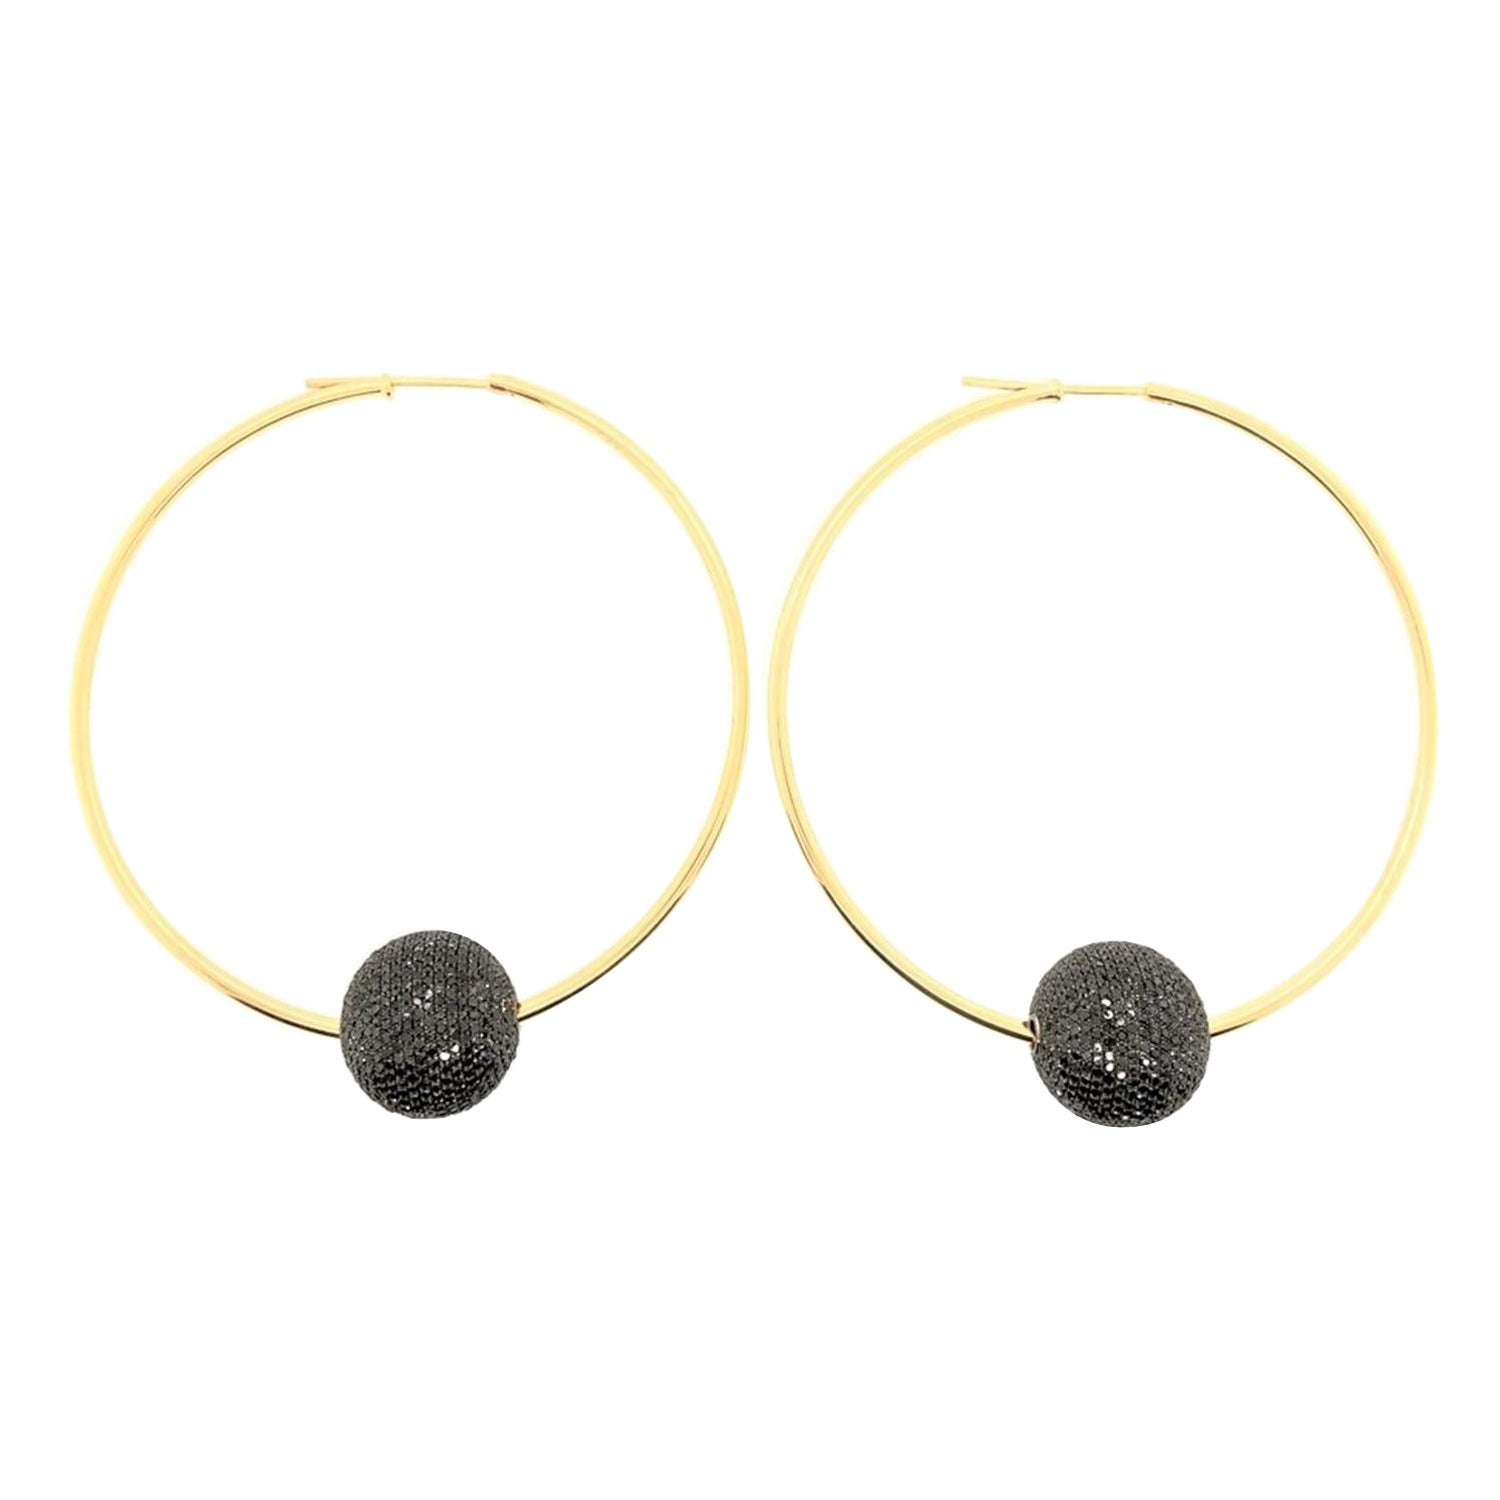 Black Diamond Ball Hoop Earrings Made in 18k Gold